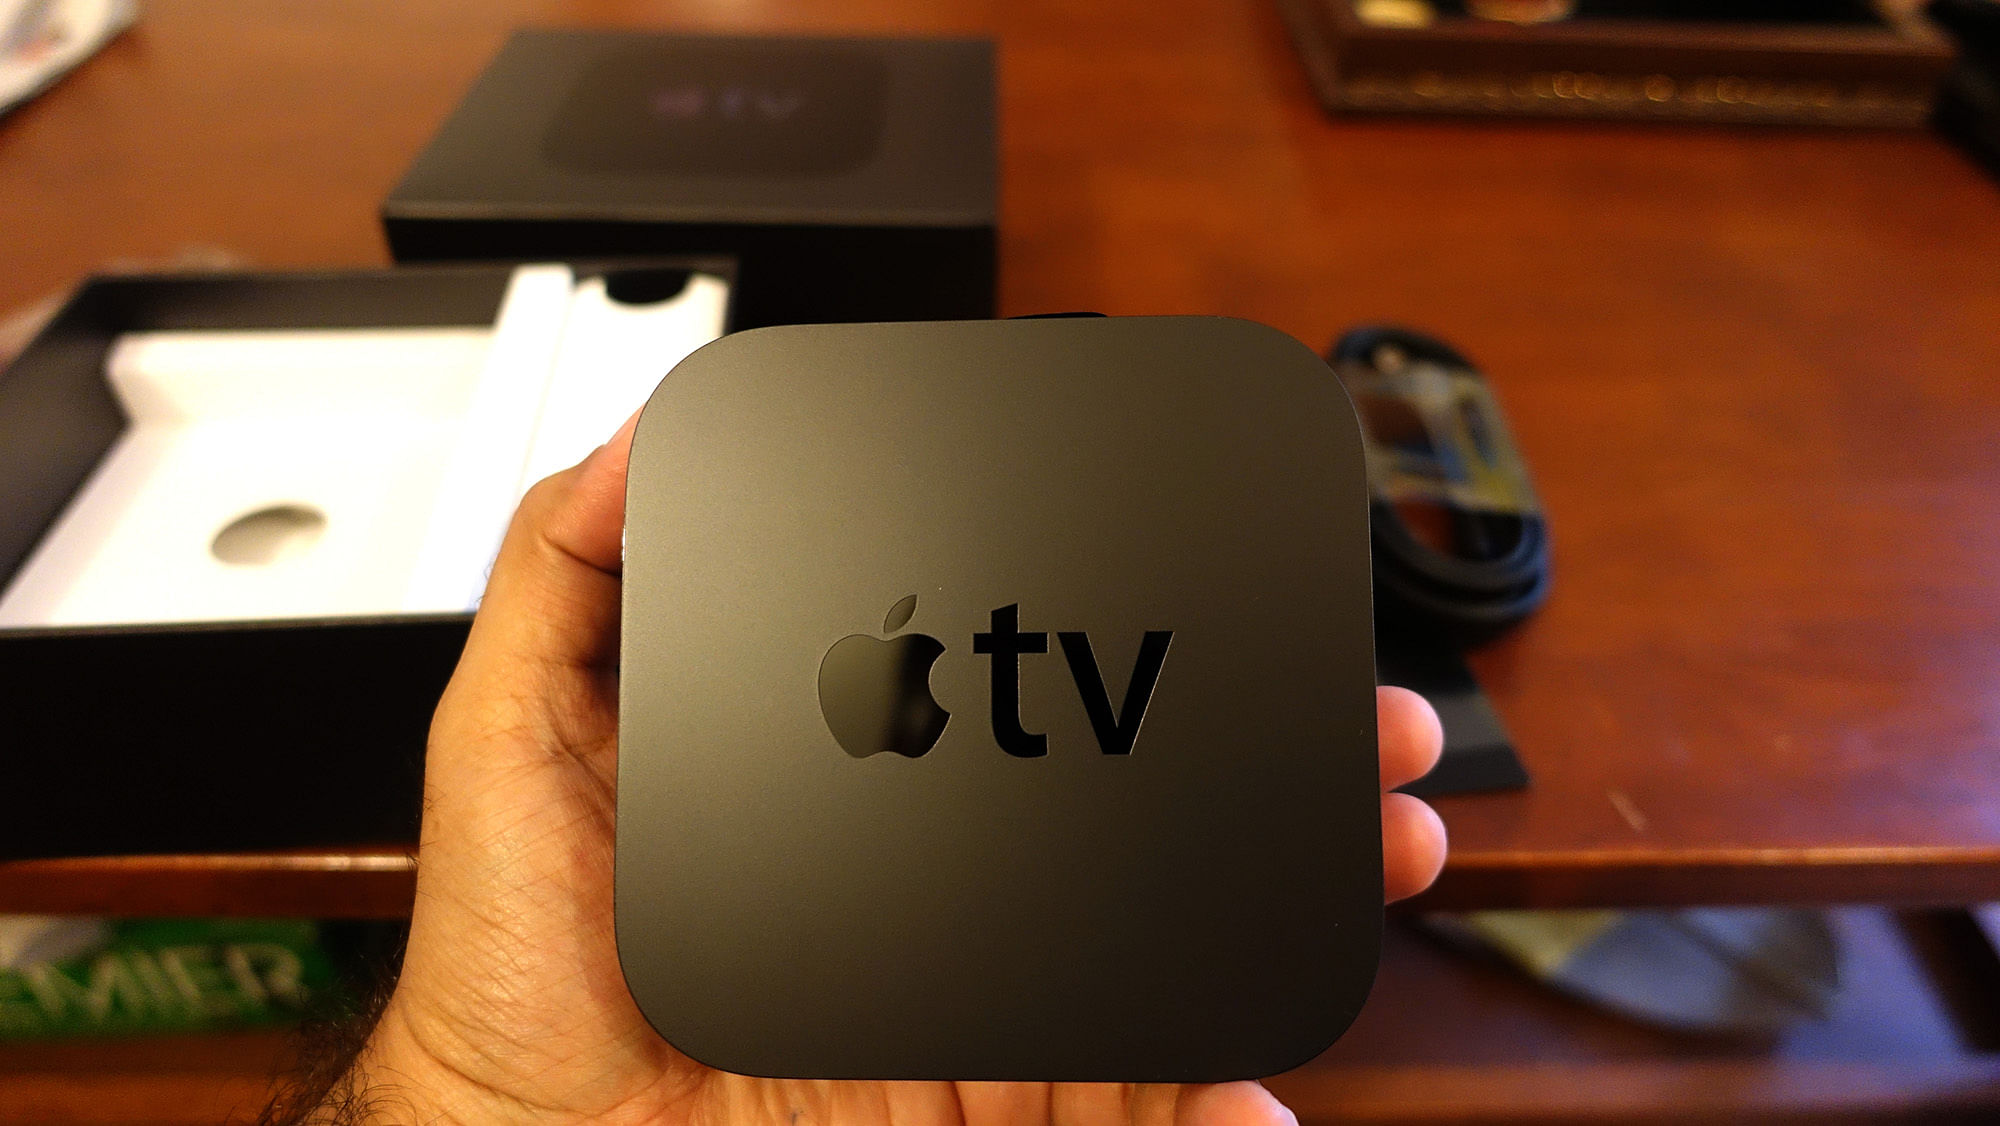 Apple TV fourth generation. (Photo: Tushar Kanwar)